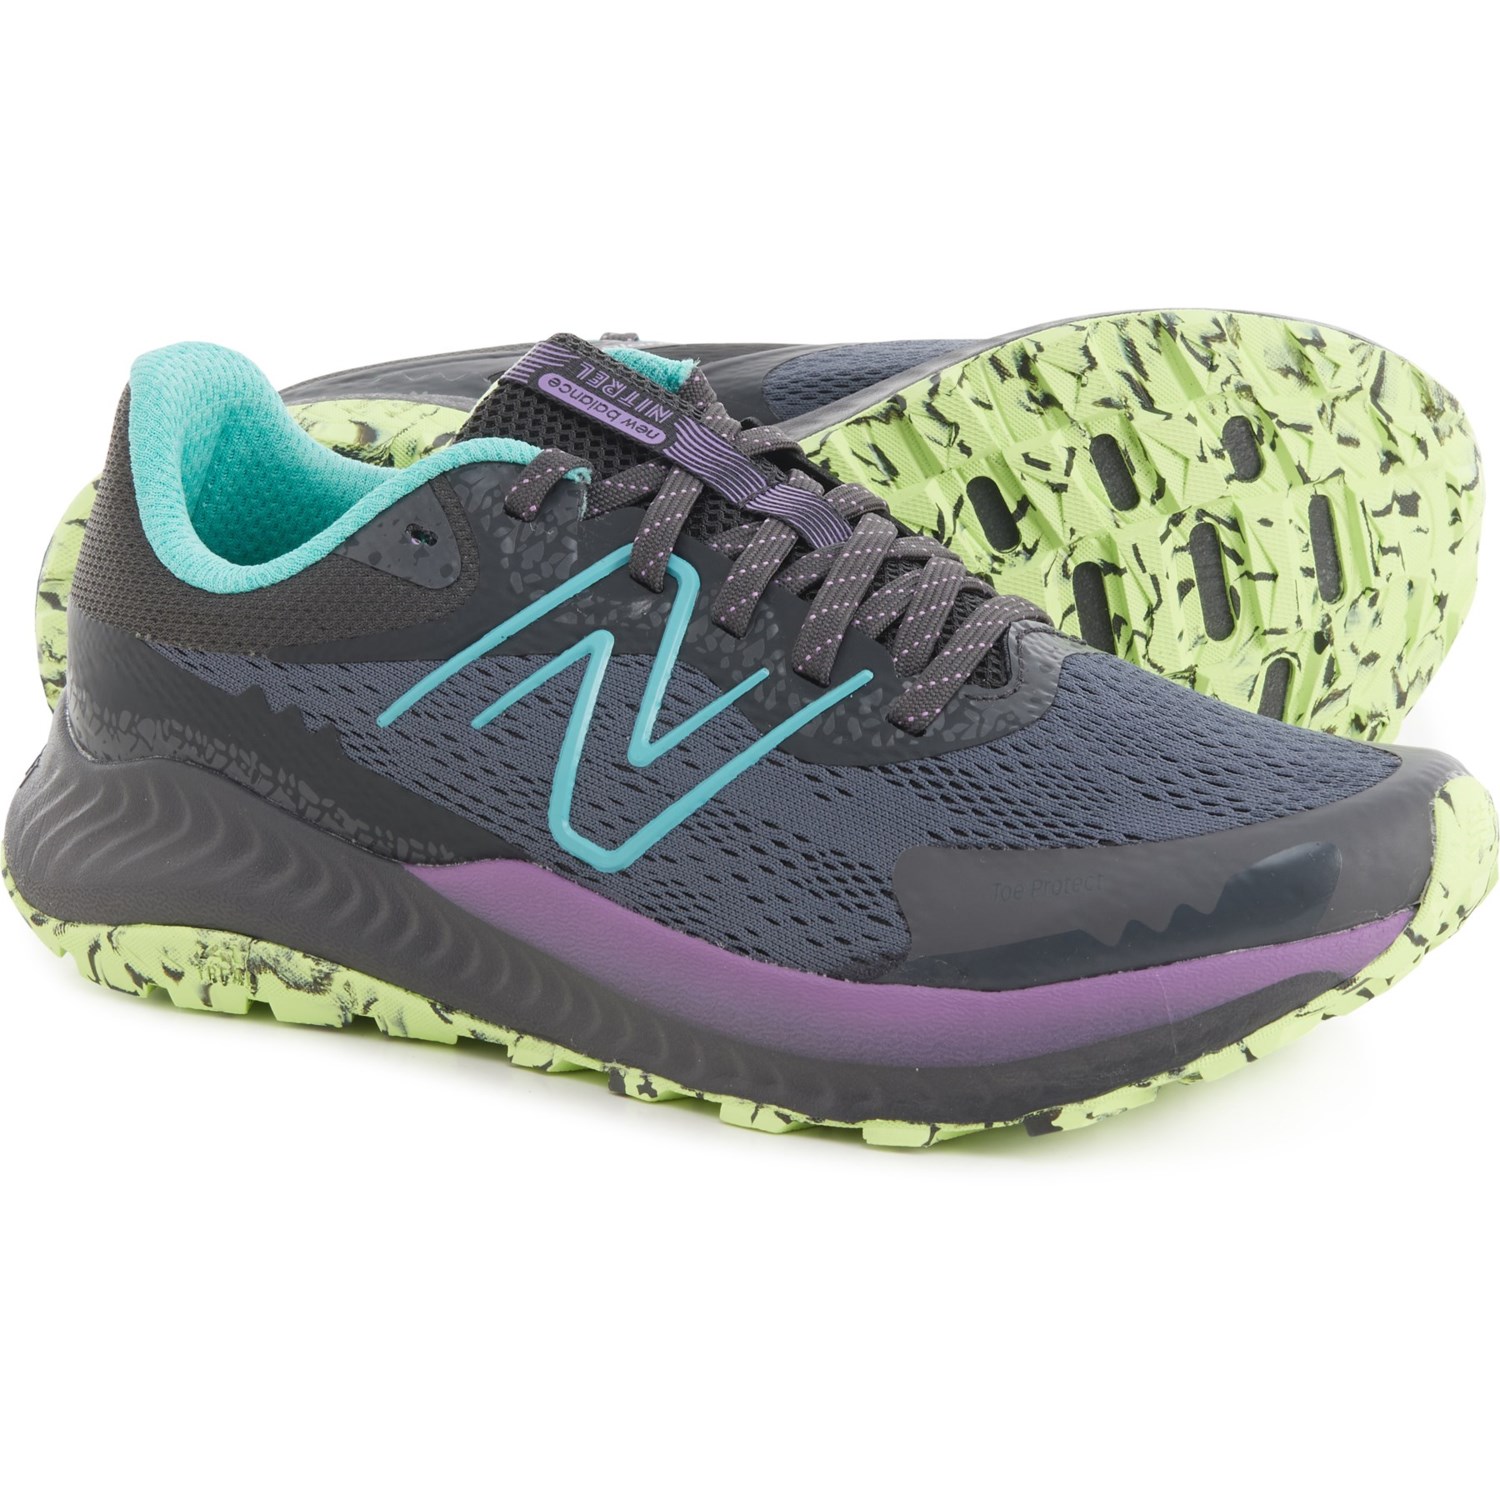 New Balance DynaSoft Nitrel v5 Trail Running Shoes (For Women)